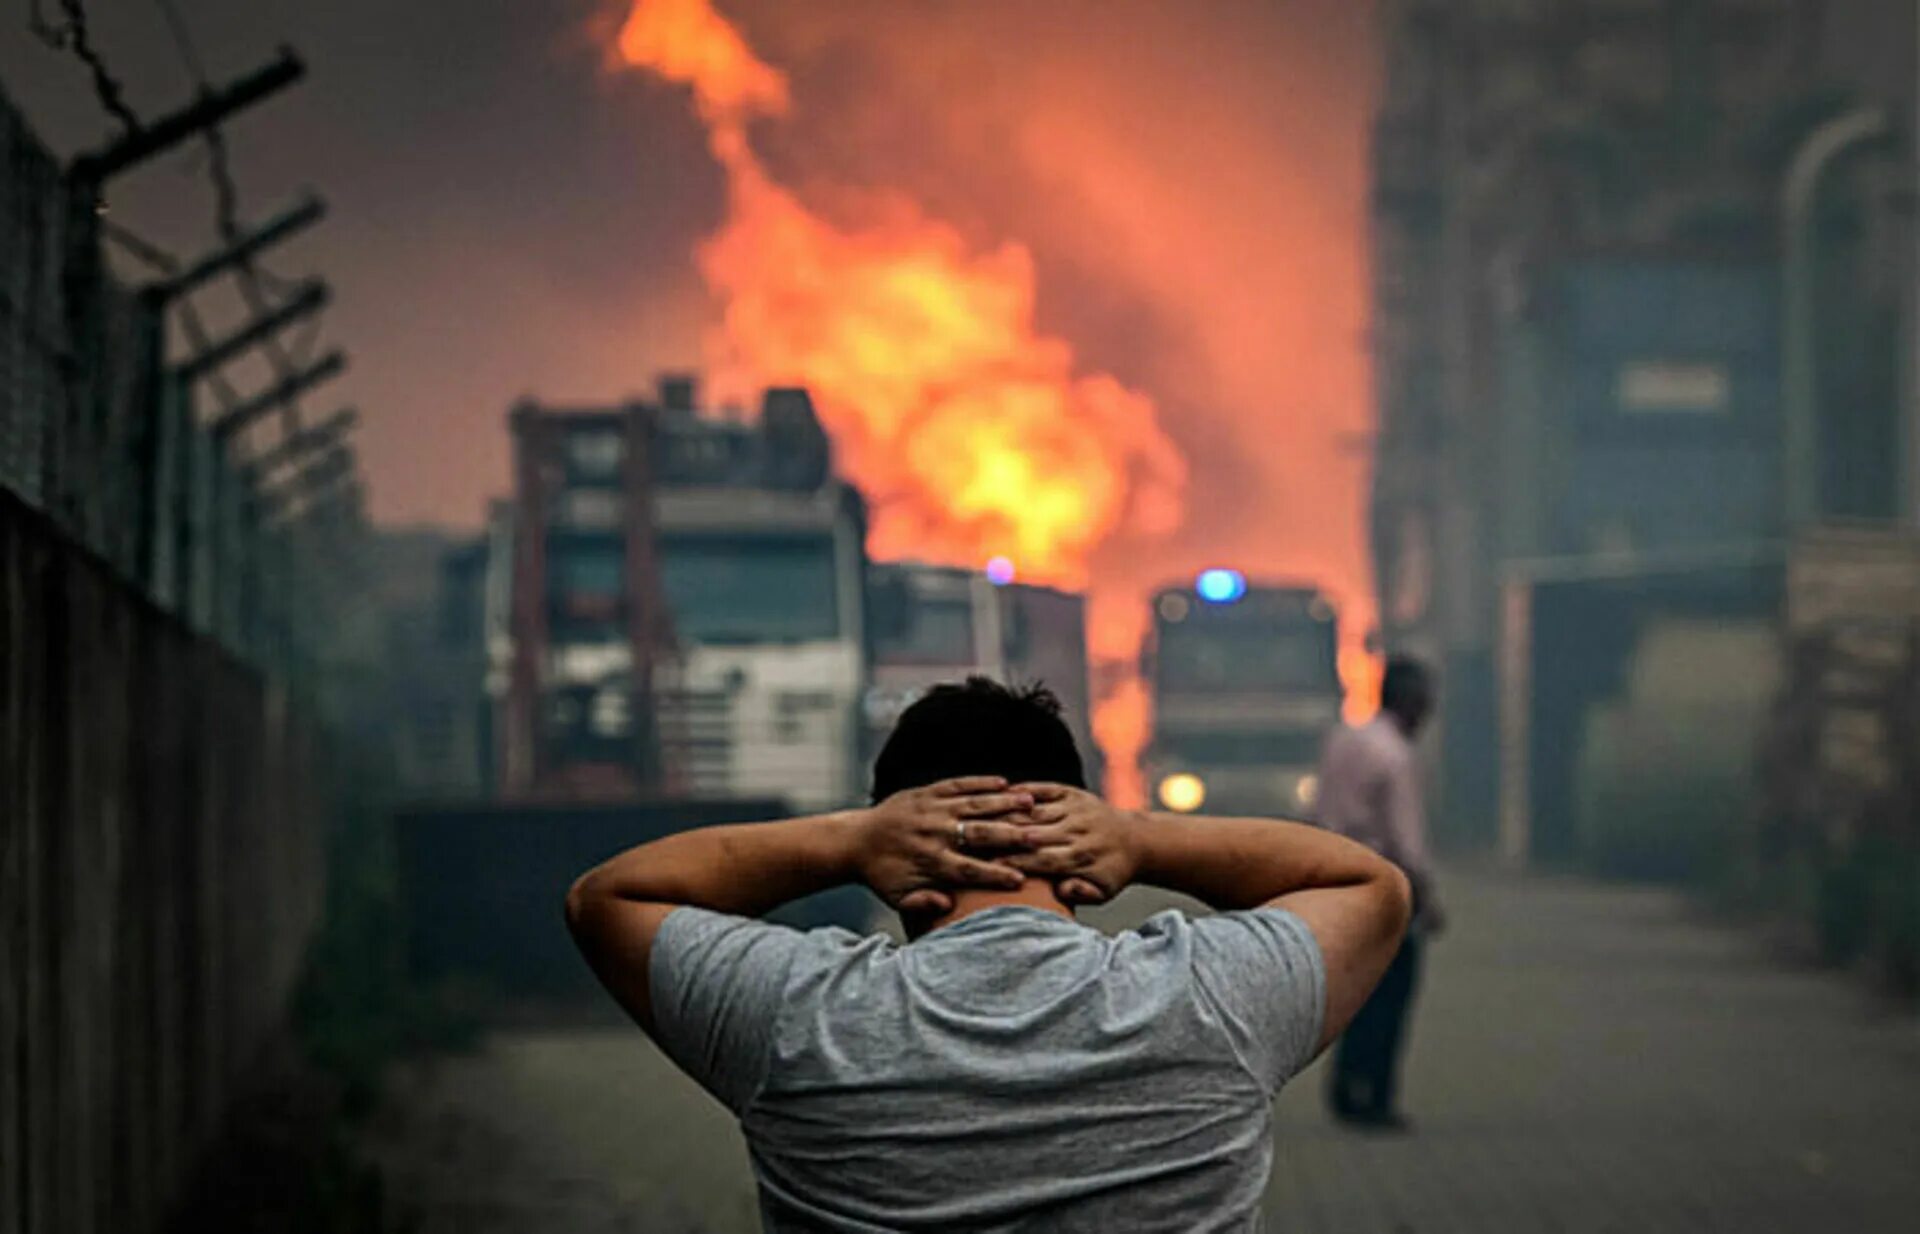 Европа горит. Пожар в Испании. Мужчина на фоне здания в России. Пожар в Португалии 2017. Сильный жар ночью